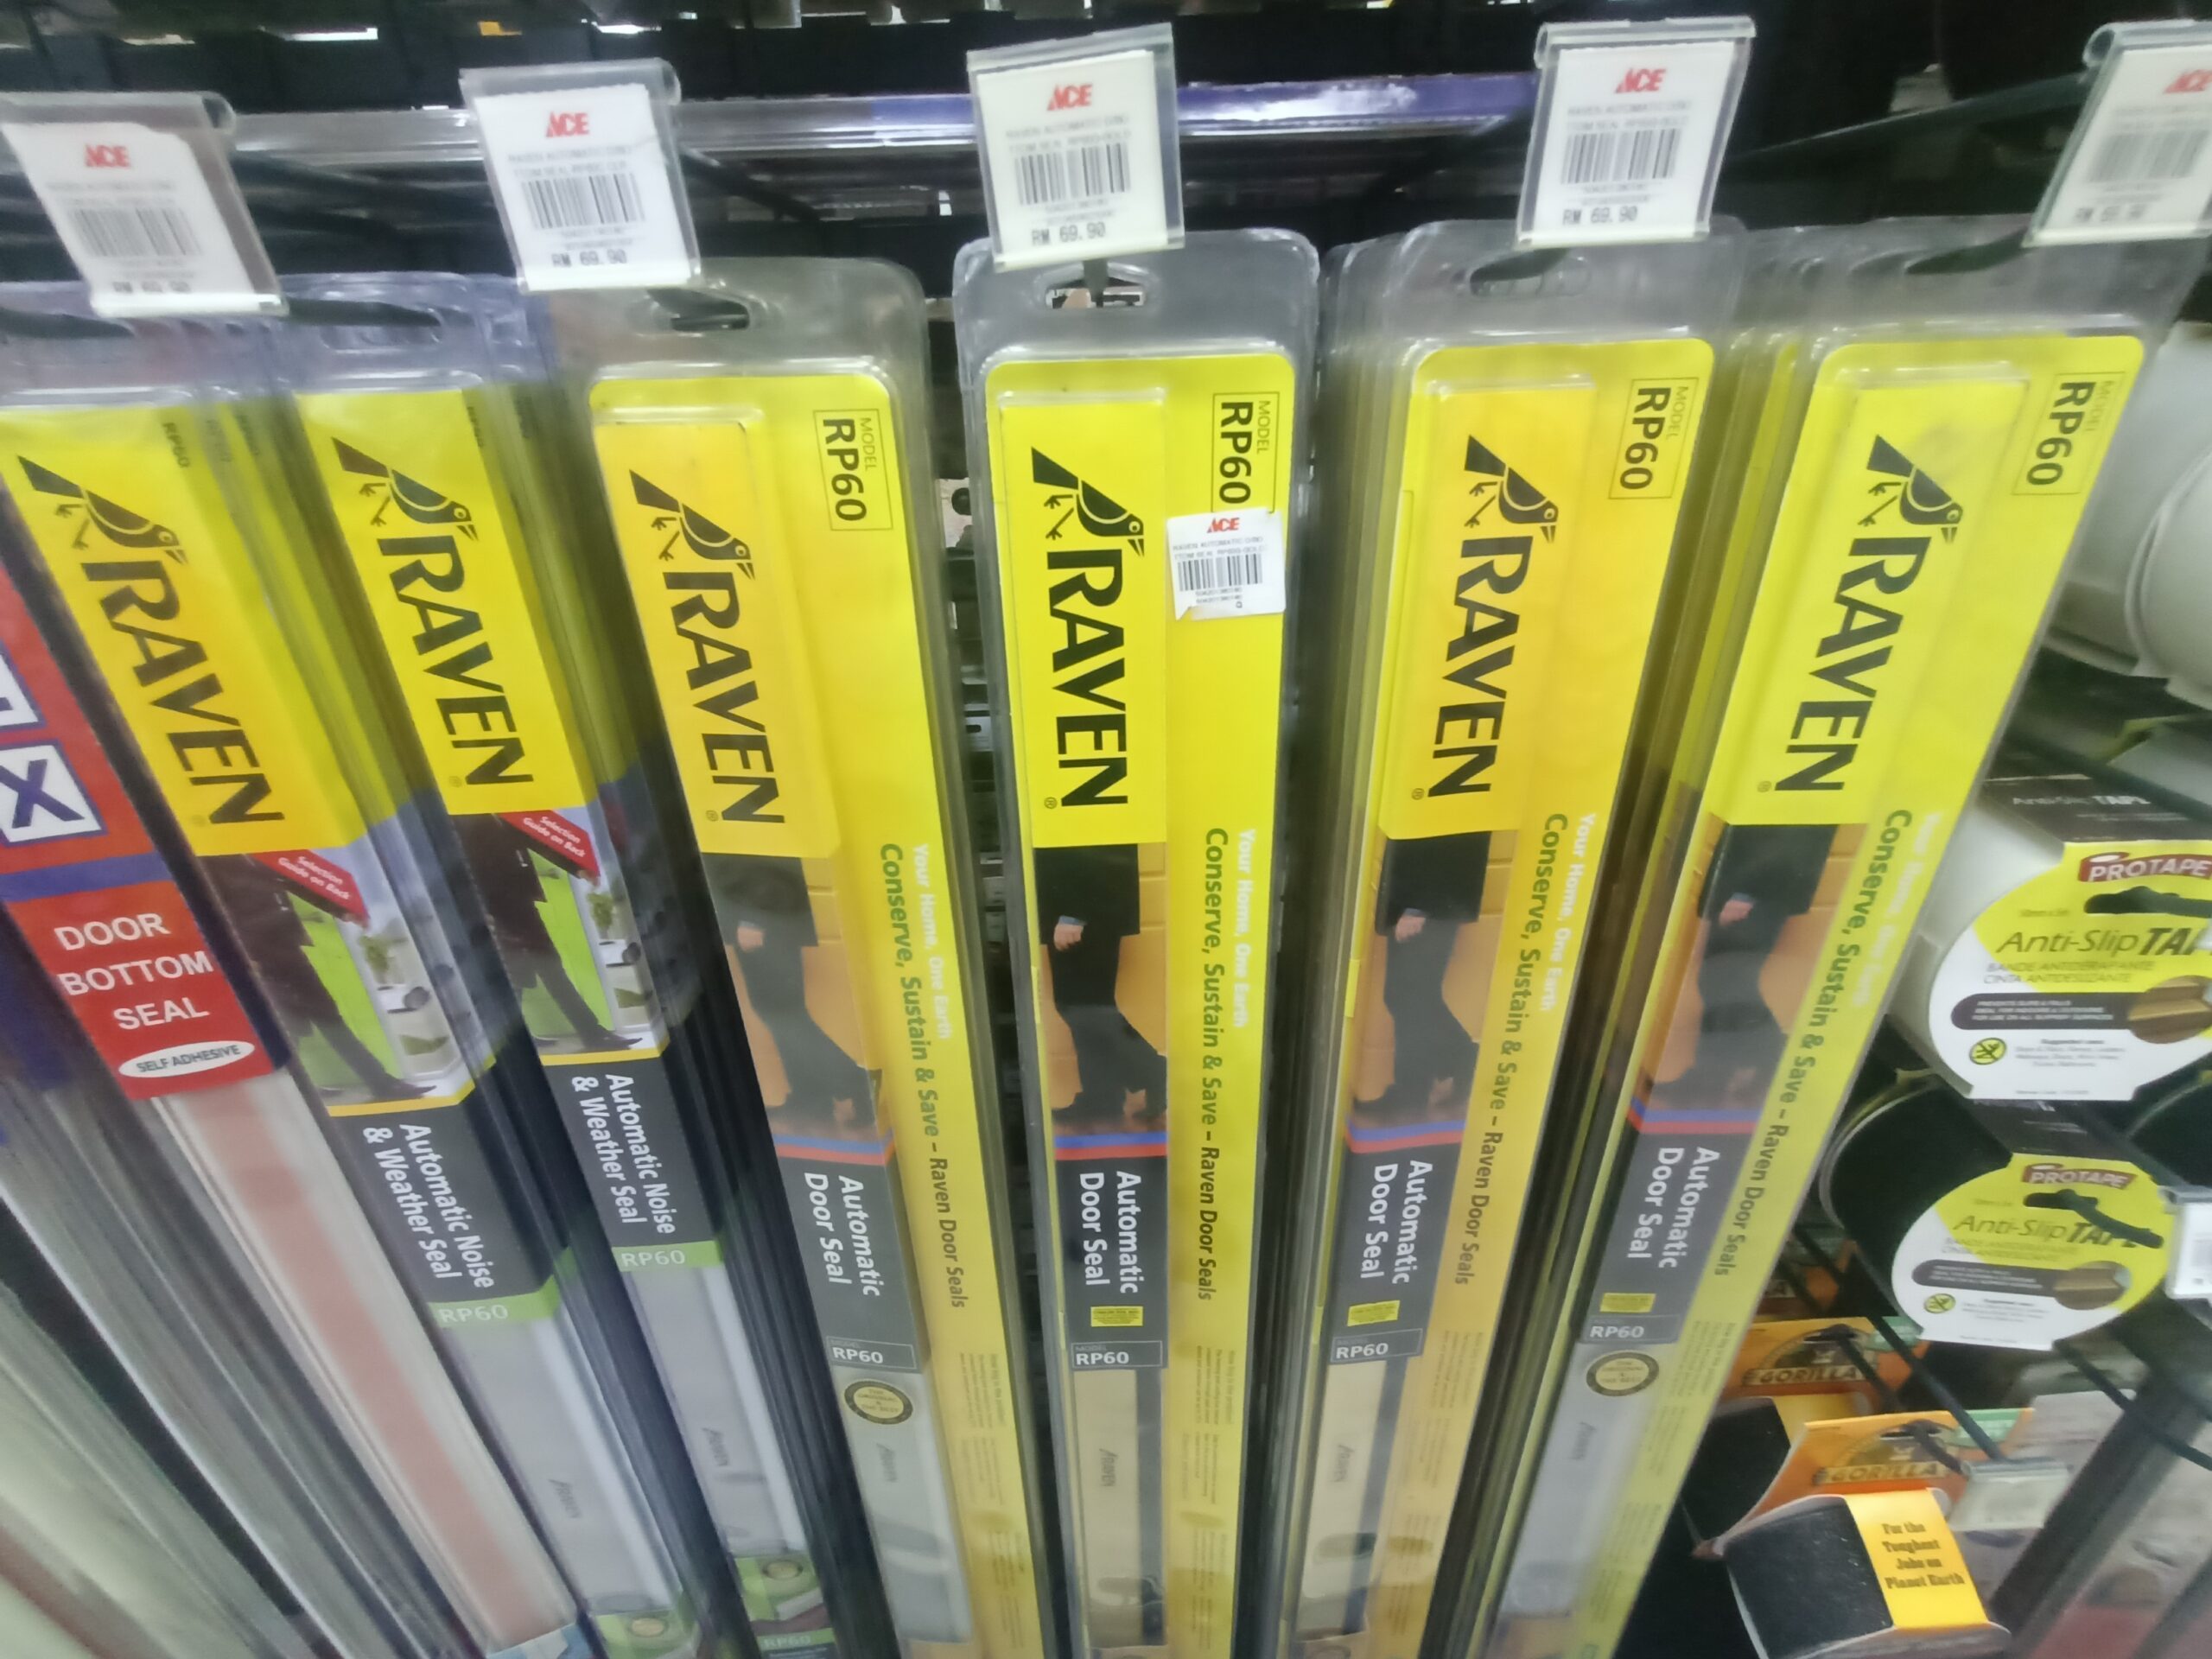 A selection of door sweeps and door seals on sale in a homeware store.